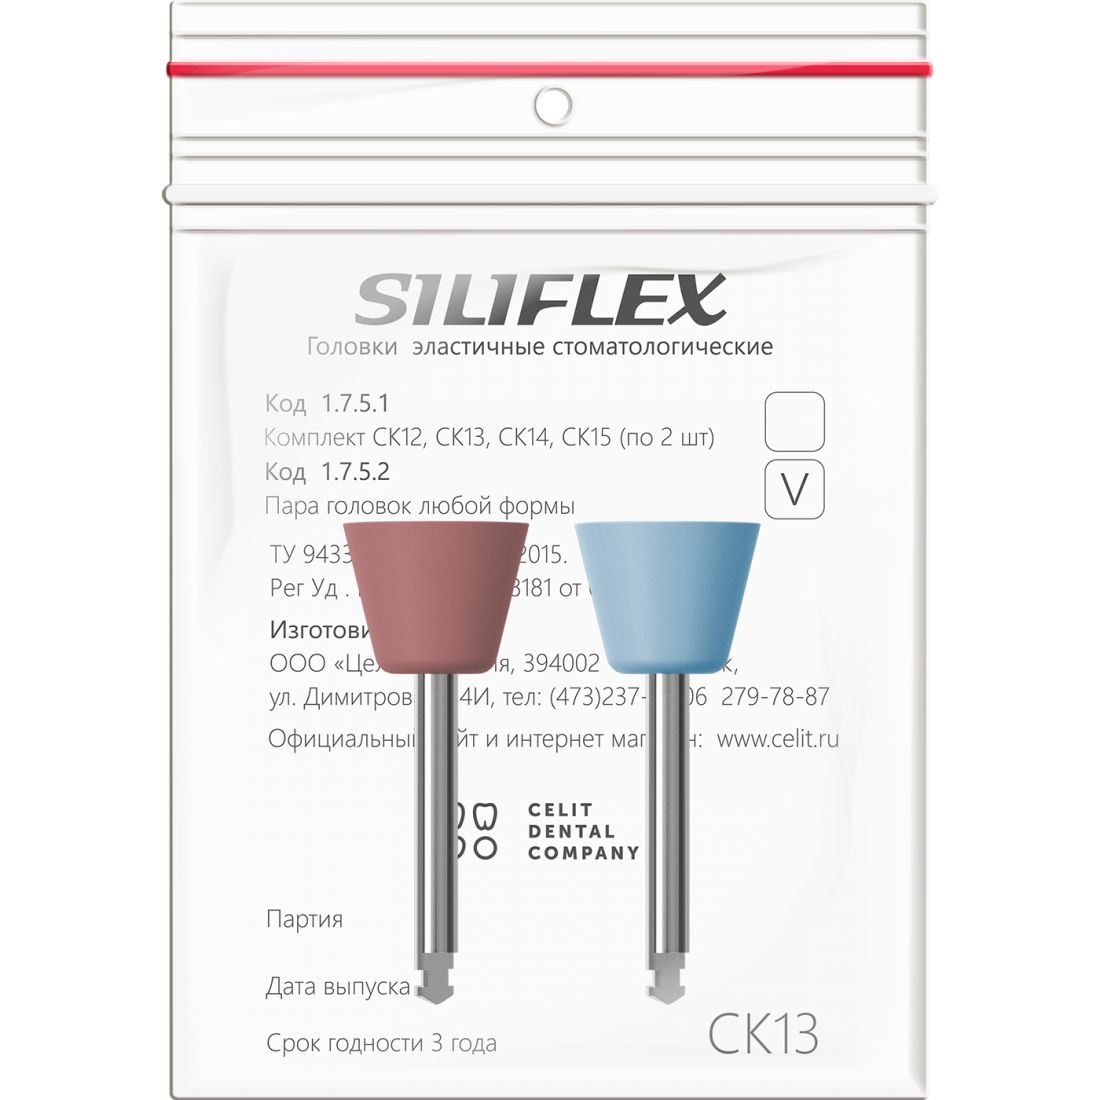 Siliflex СК13 - головки сликоновые Силифлекс для обработки пломб (2шт)